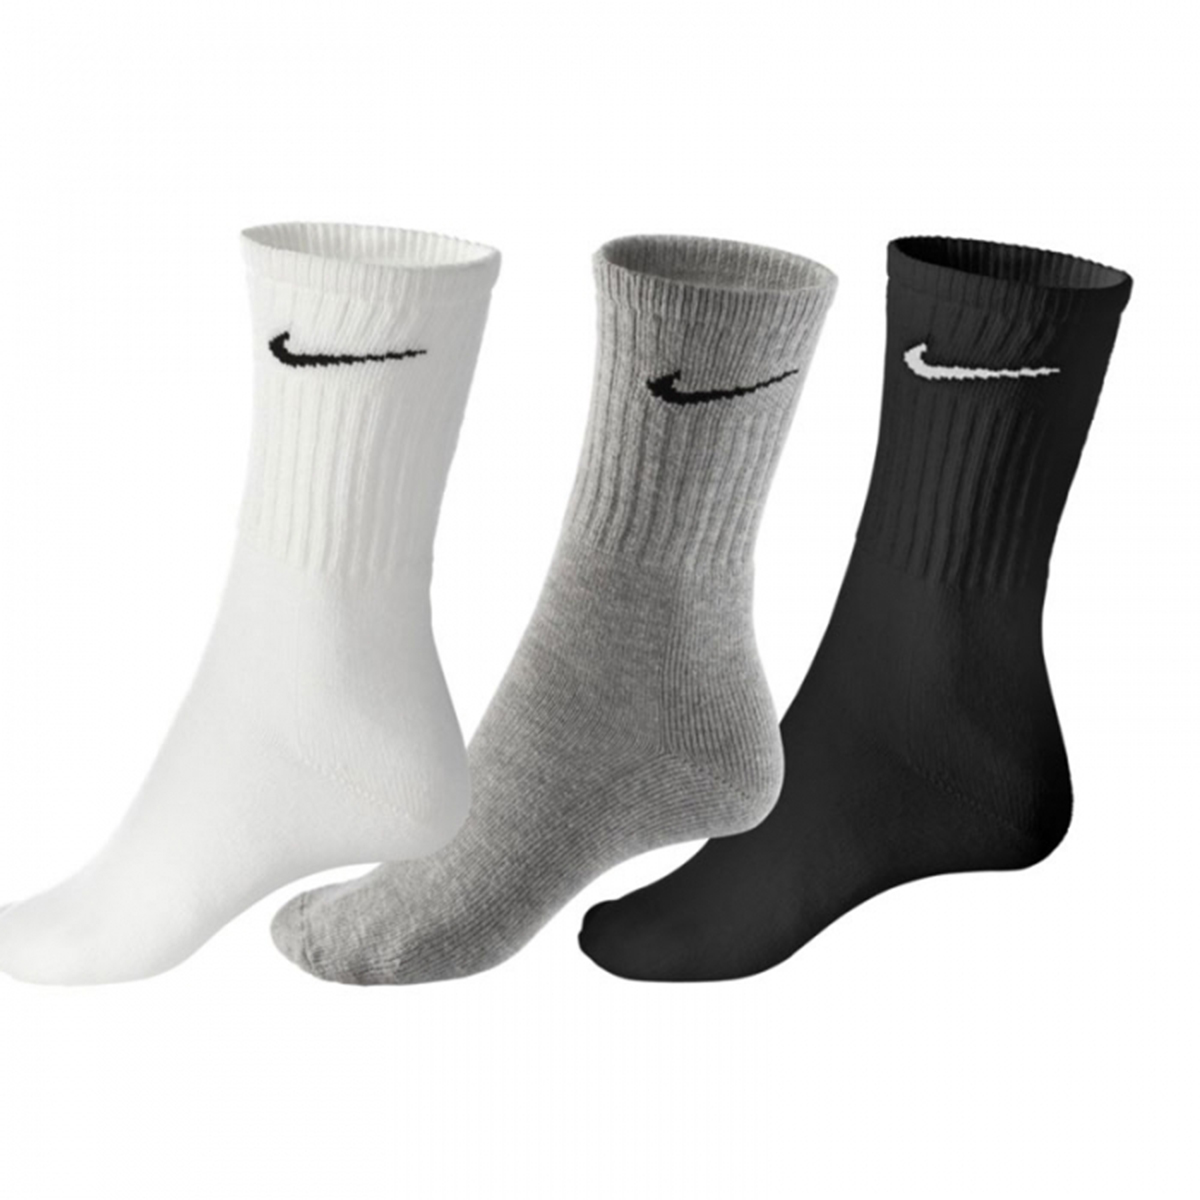 Купить носки цена. Носки Nike everyday. Носки Nike d6. Серые носки найк мужские. Найк носки 10 пар белые в упаковке.